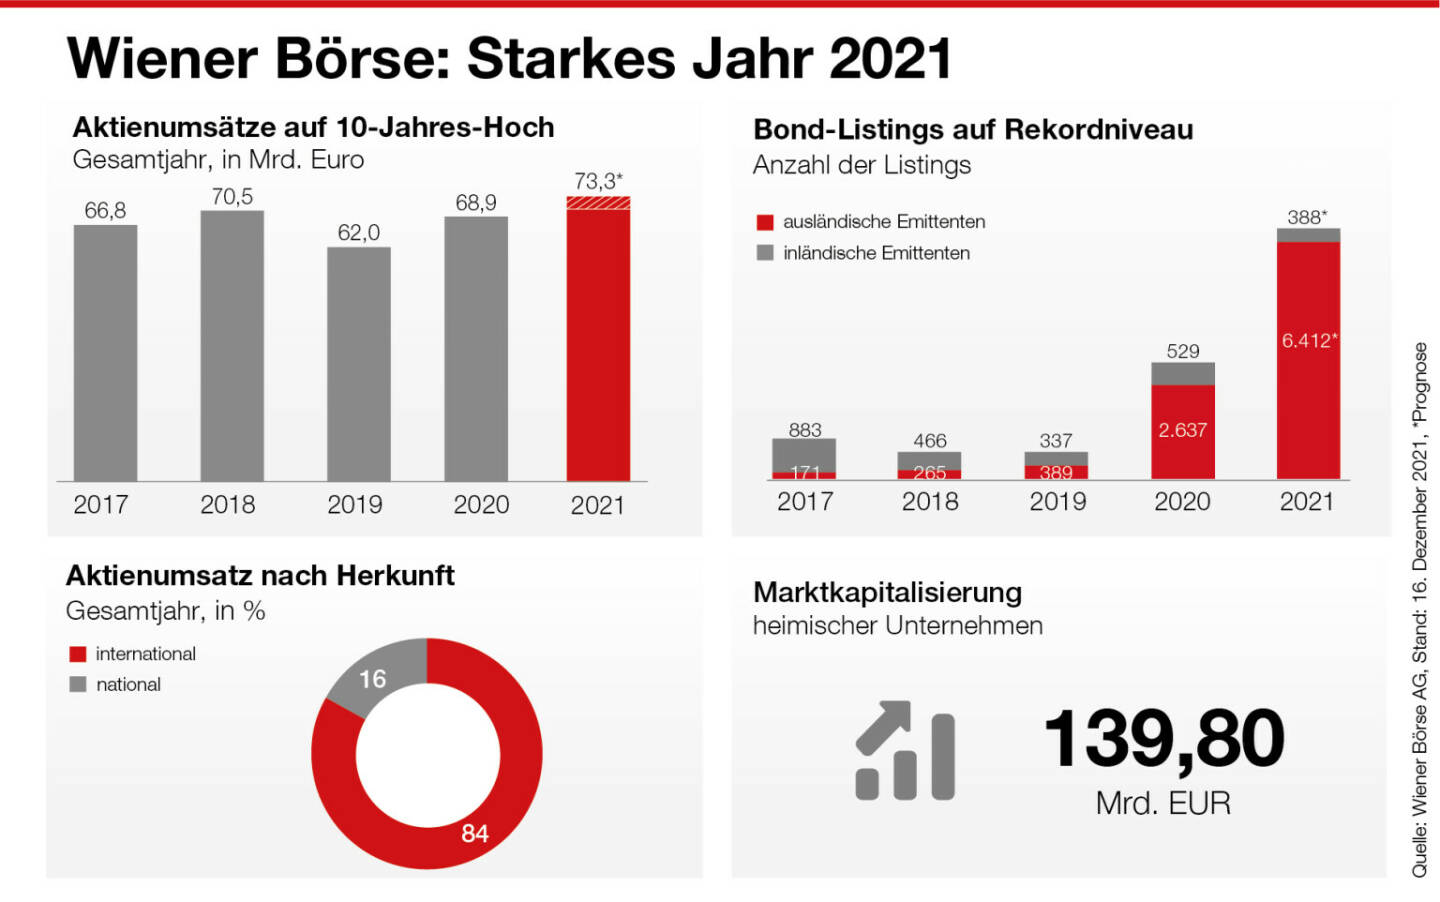 Wiener Börse:  Infografik zum Jahr 2021